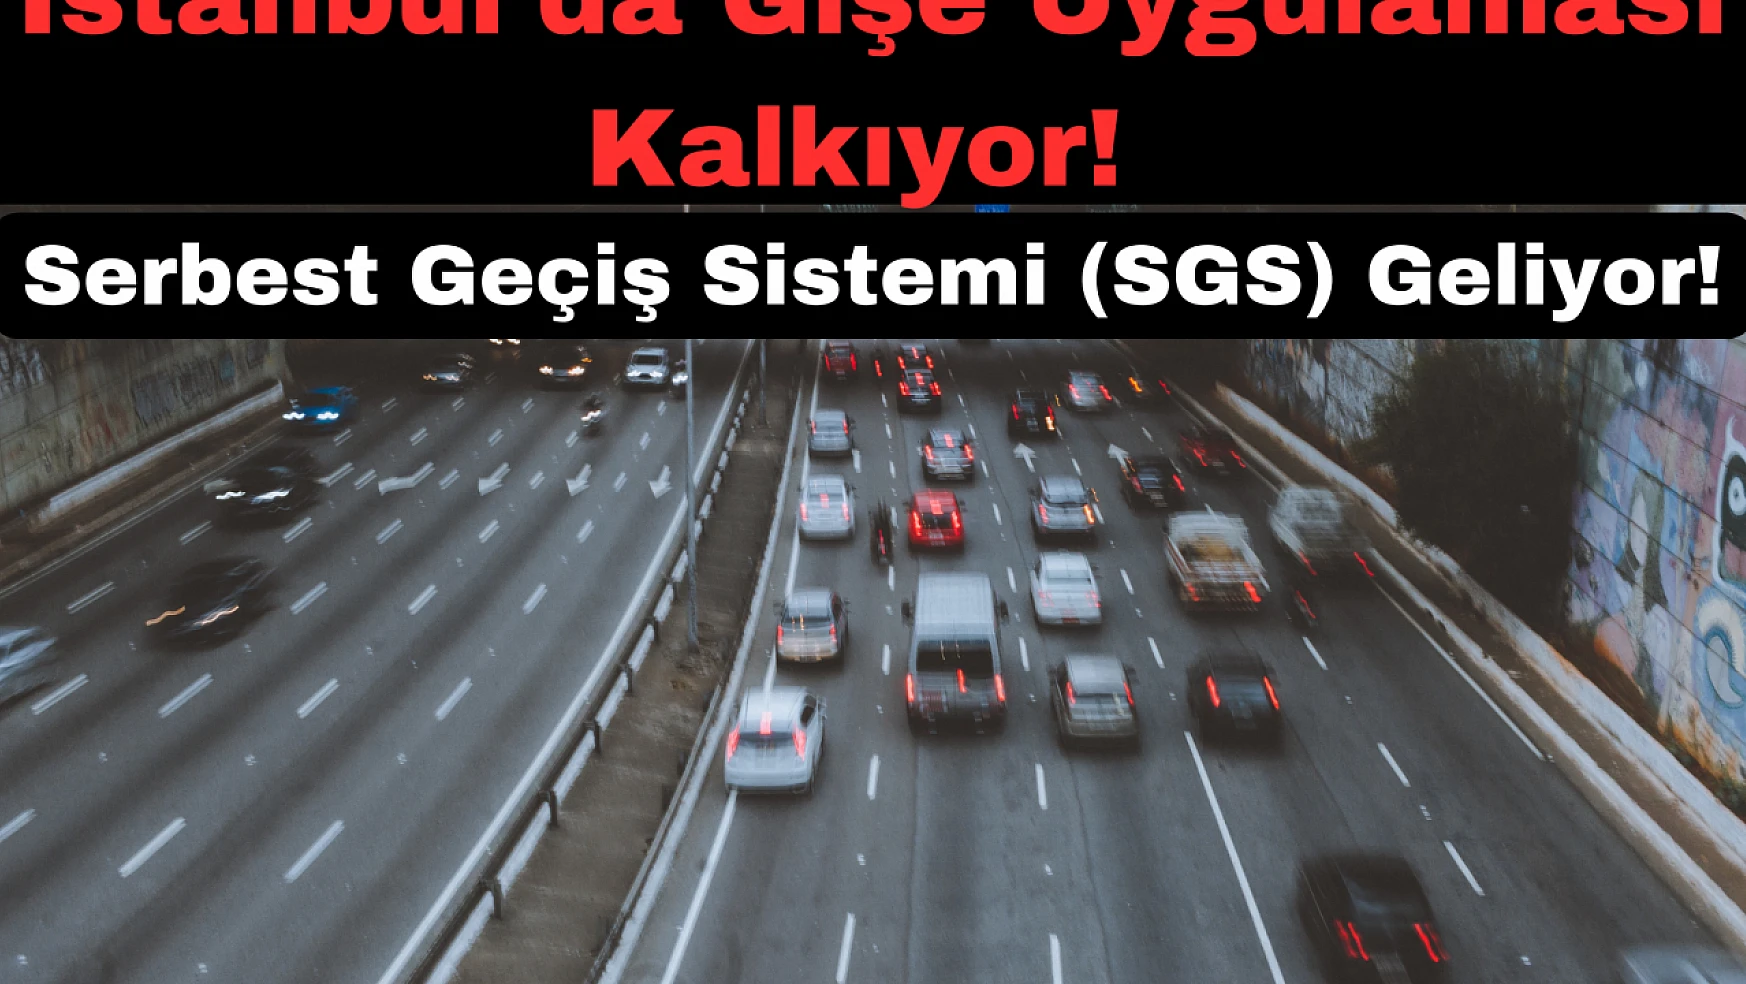 İstanbul'da Gişe Uygulaması Kalkıyor: Serbest Geçiş Sistemi (SGS) Geliyor!